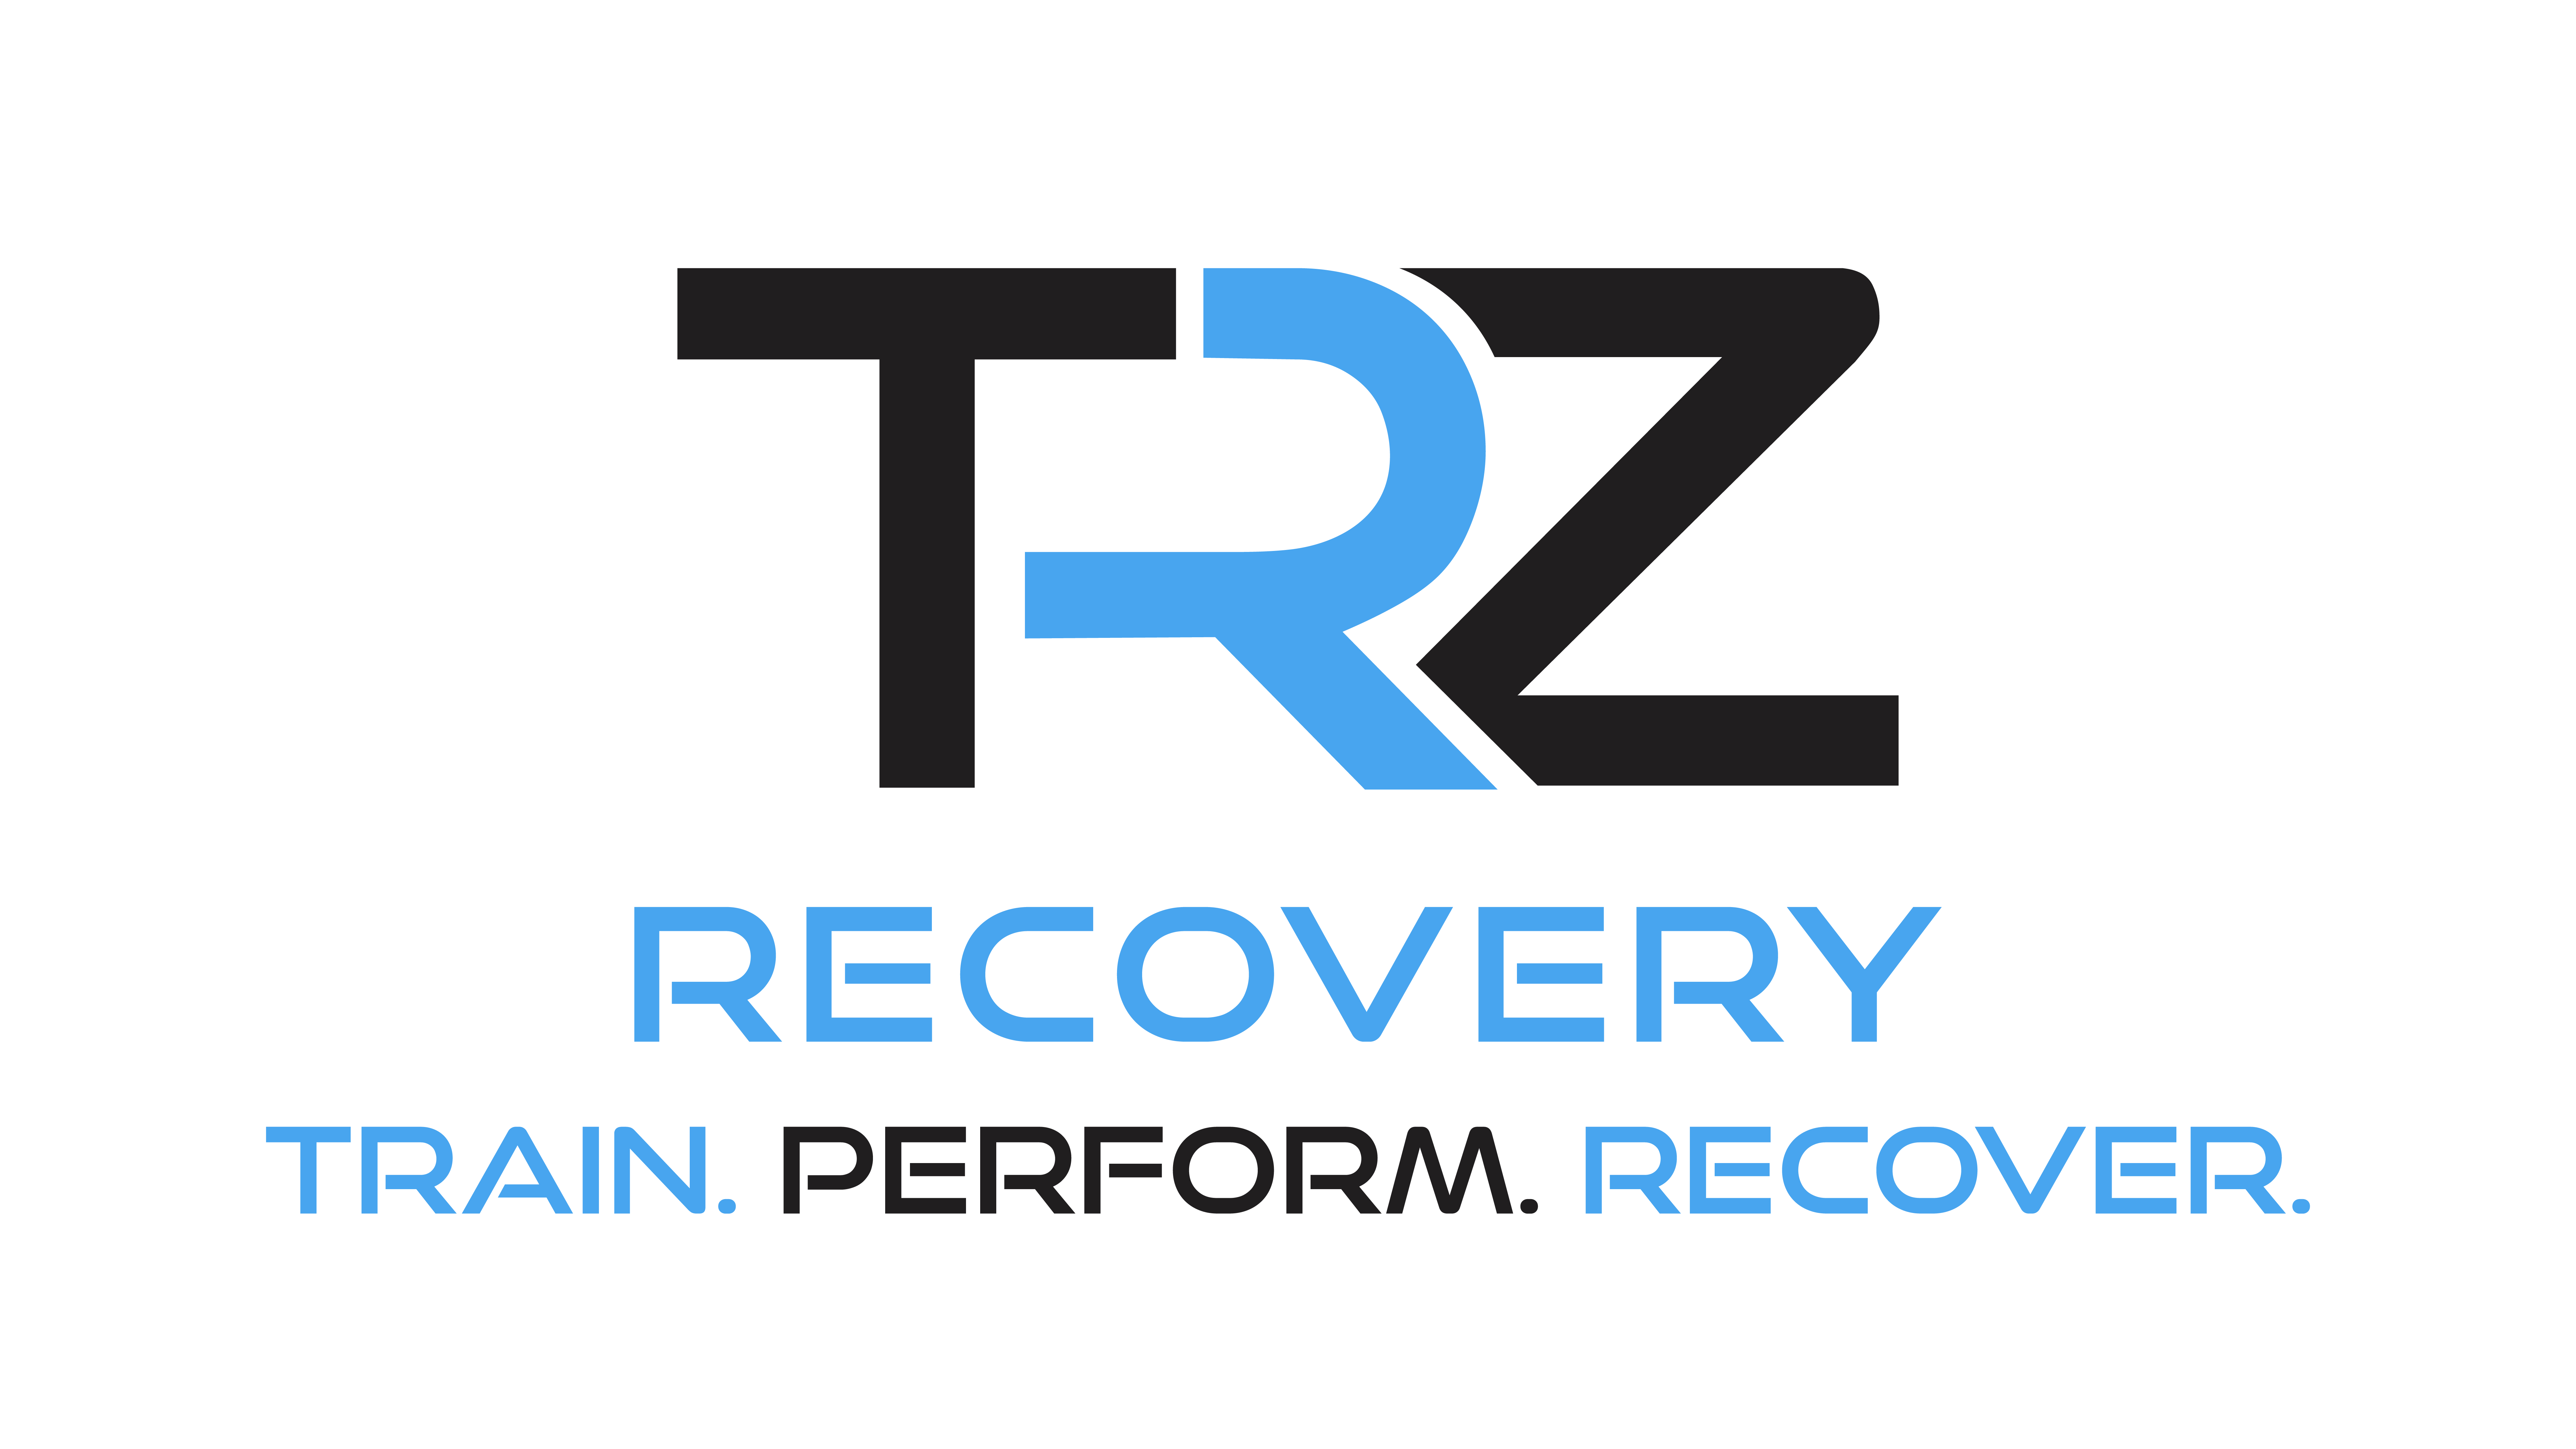 TRZ recovery